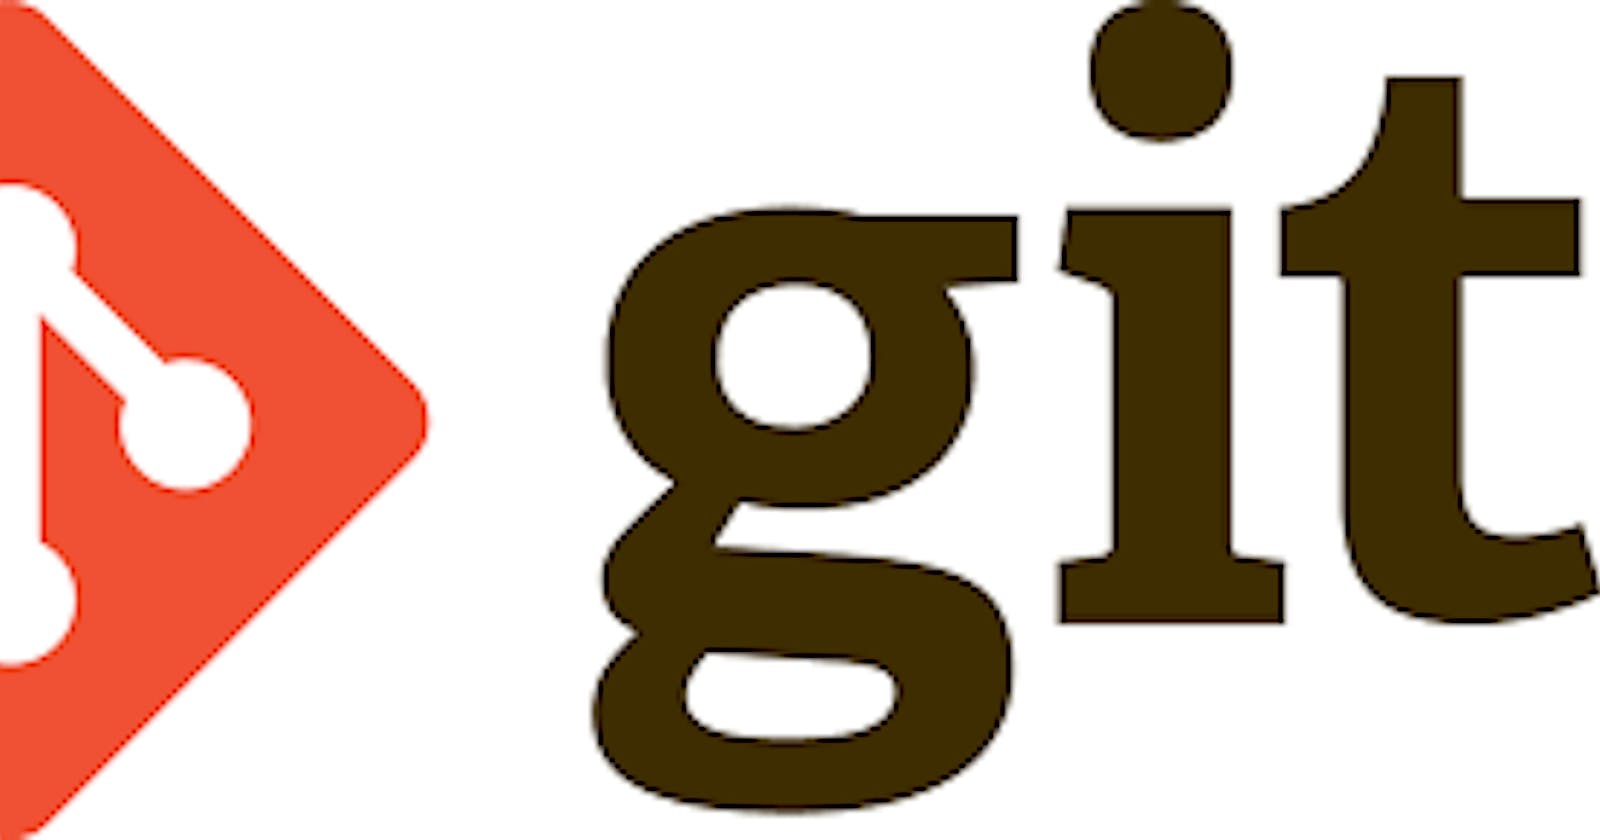 Blog on Devops Tools: GIT & GITHUB